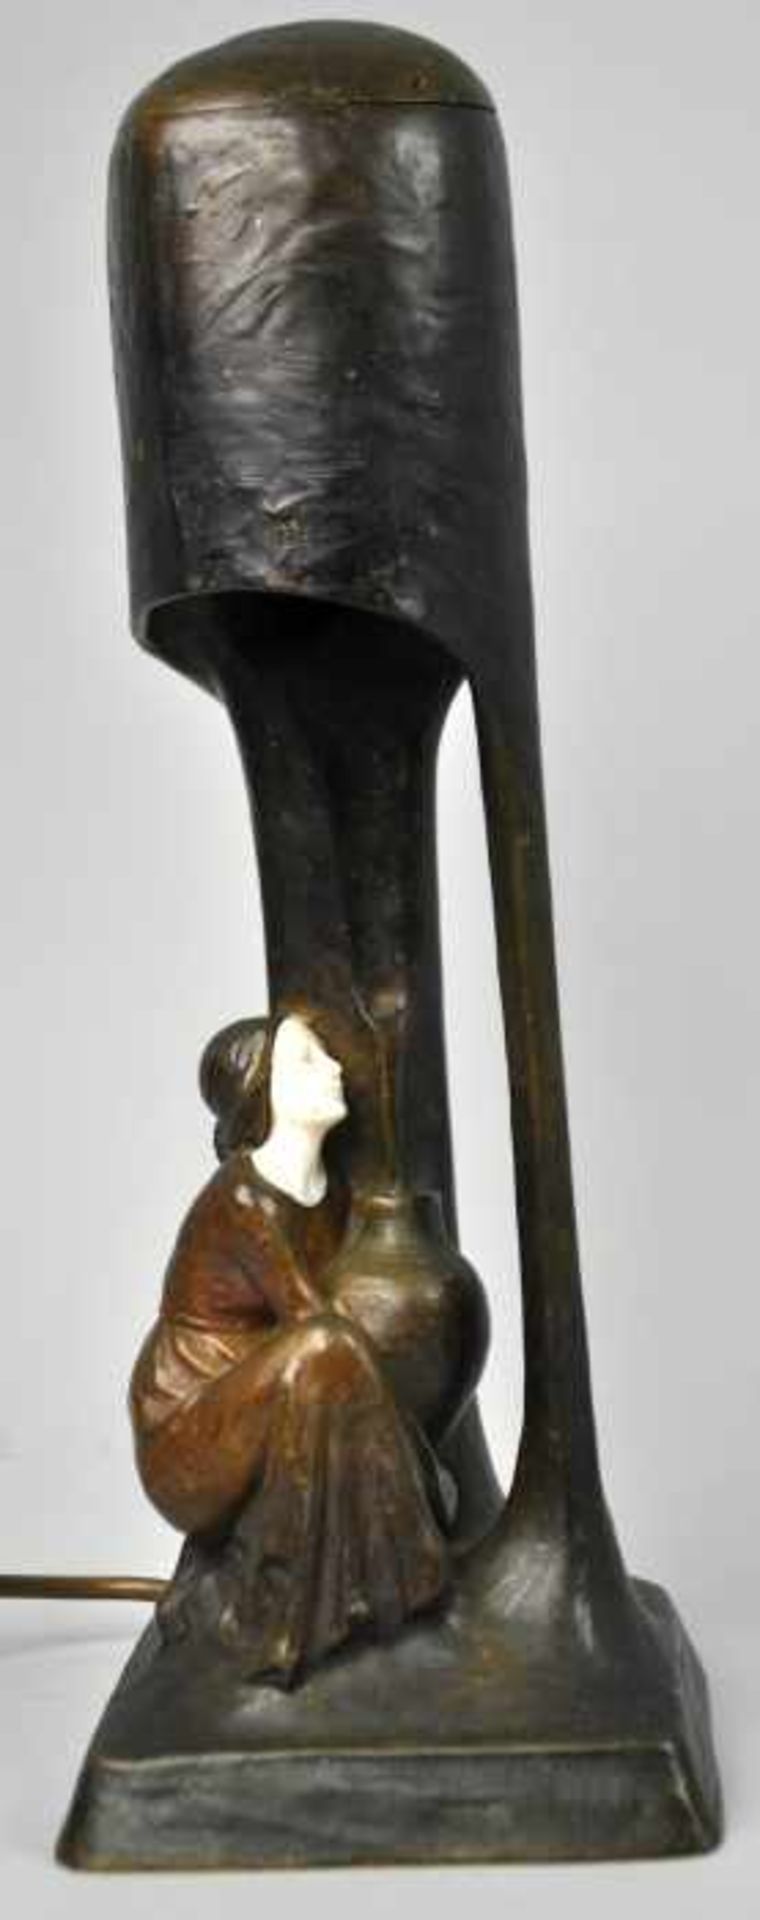 TERESZCZUK Peter (1875 Wybudow - 1963 Wien) Tischlampe mit sitzender Dame, Jugendstil, um 1900,